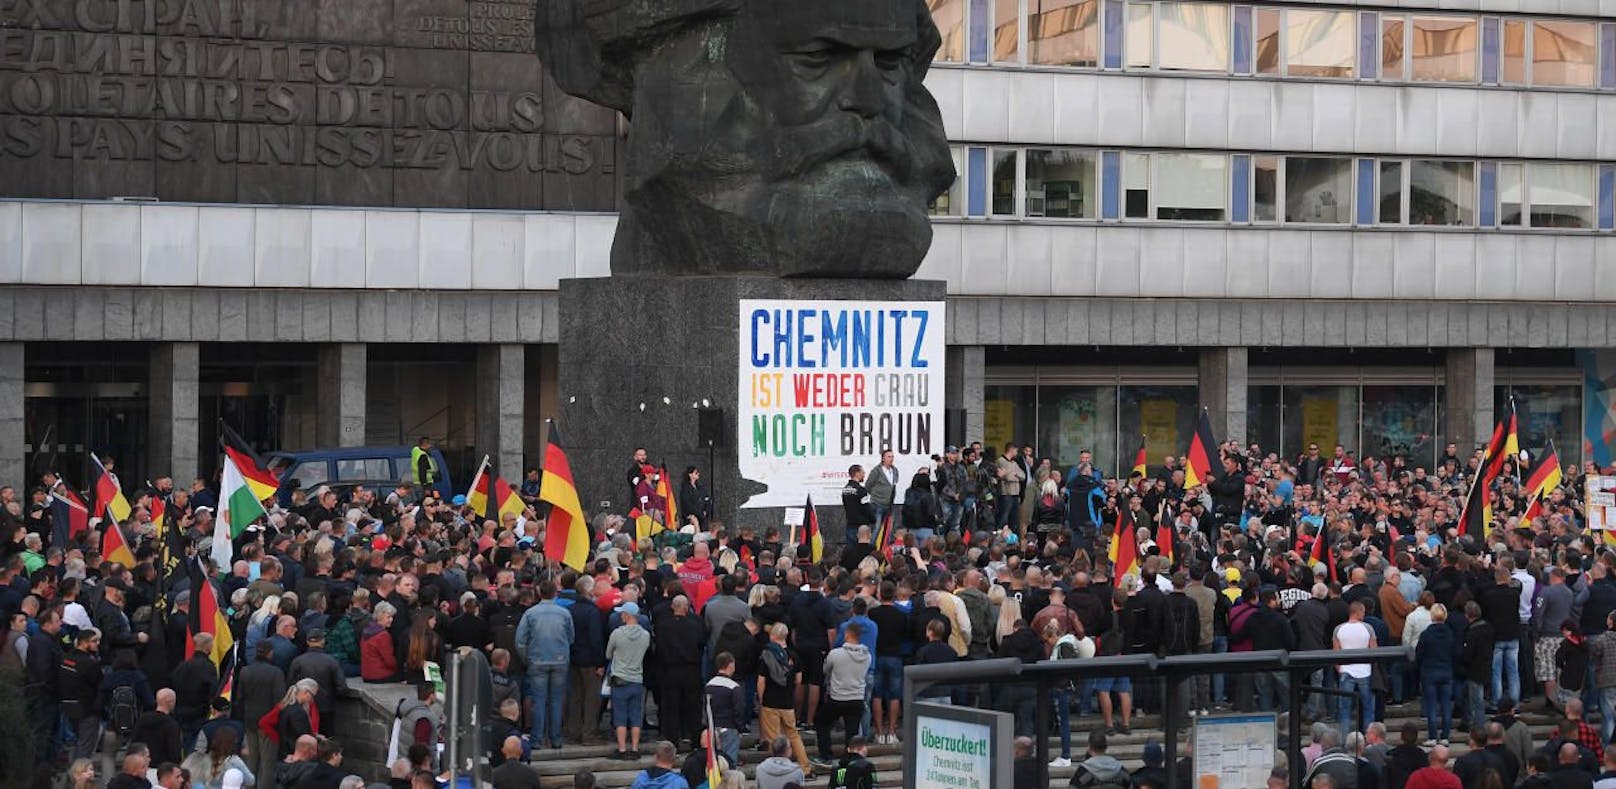 Teilnehmer einer Demonstration der rechtspopulistischen Bewegung Pro Chemnitz versammeln sich vor dem Karl-Marx-Monument.